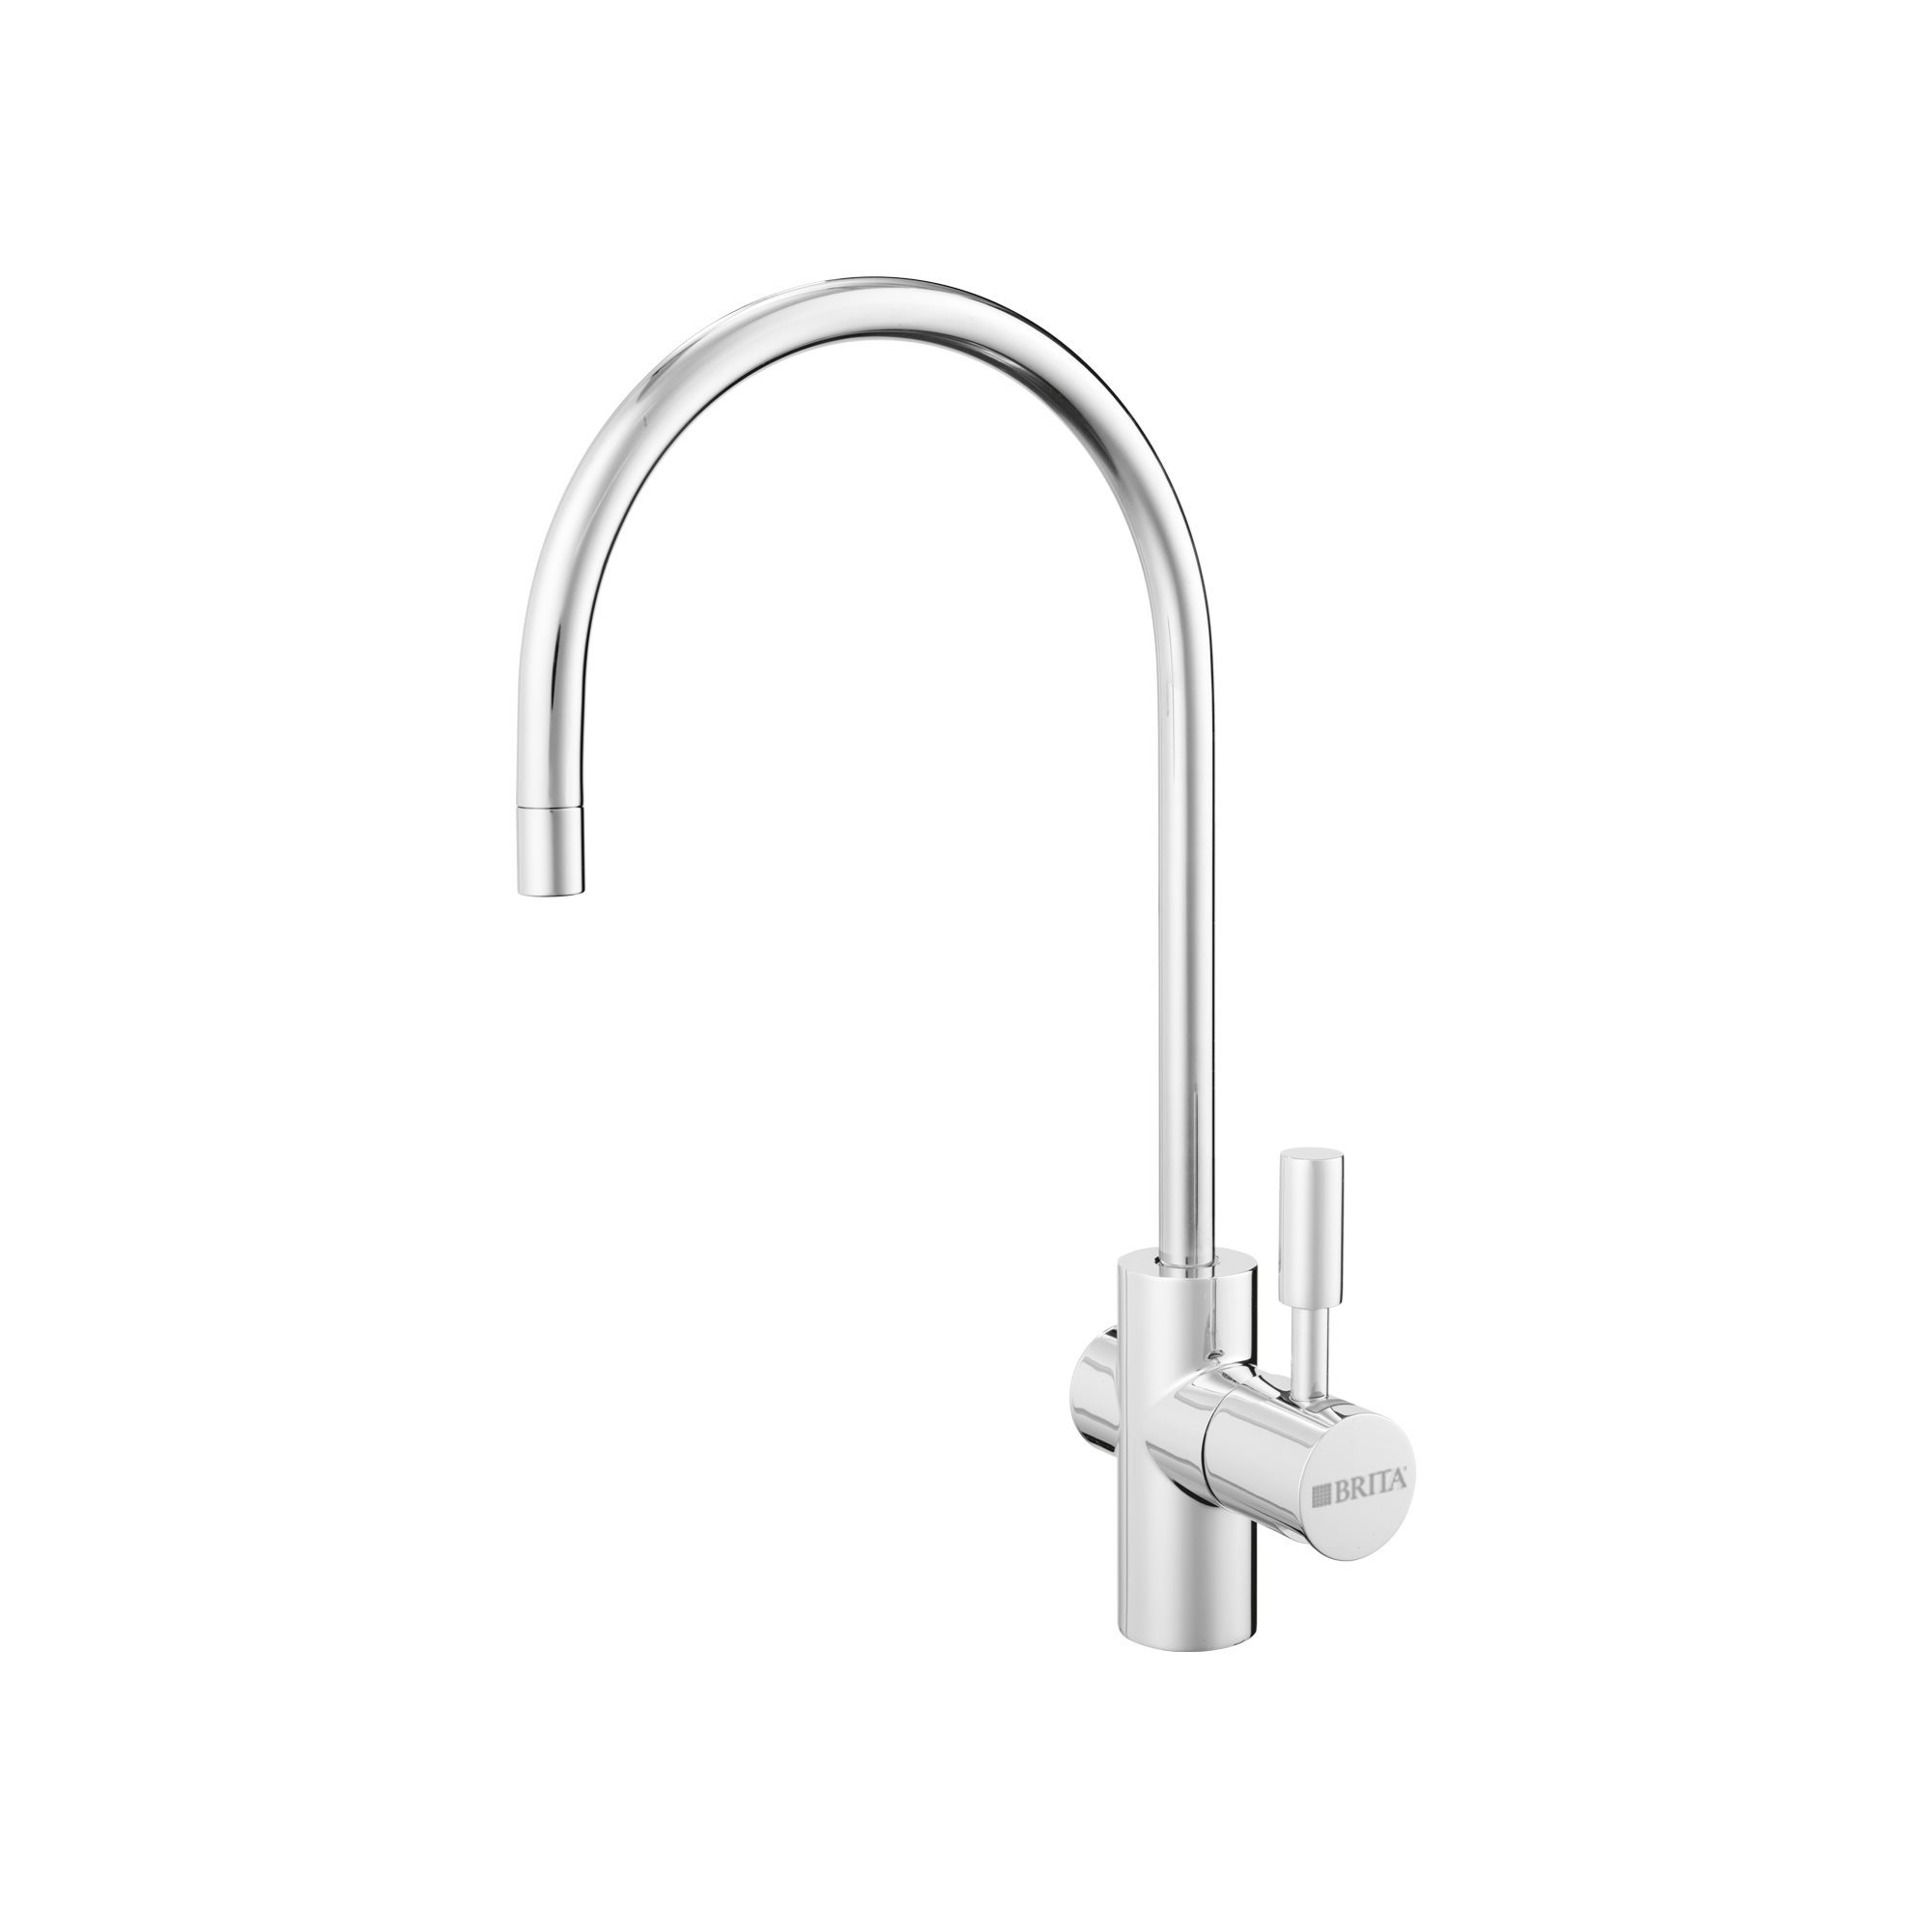 BRITA mypure P1 – Compact Water Filter Under Sink